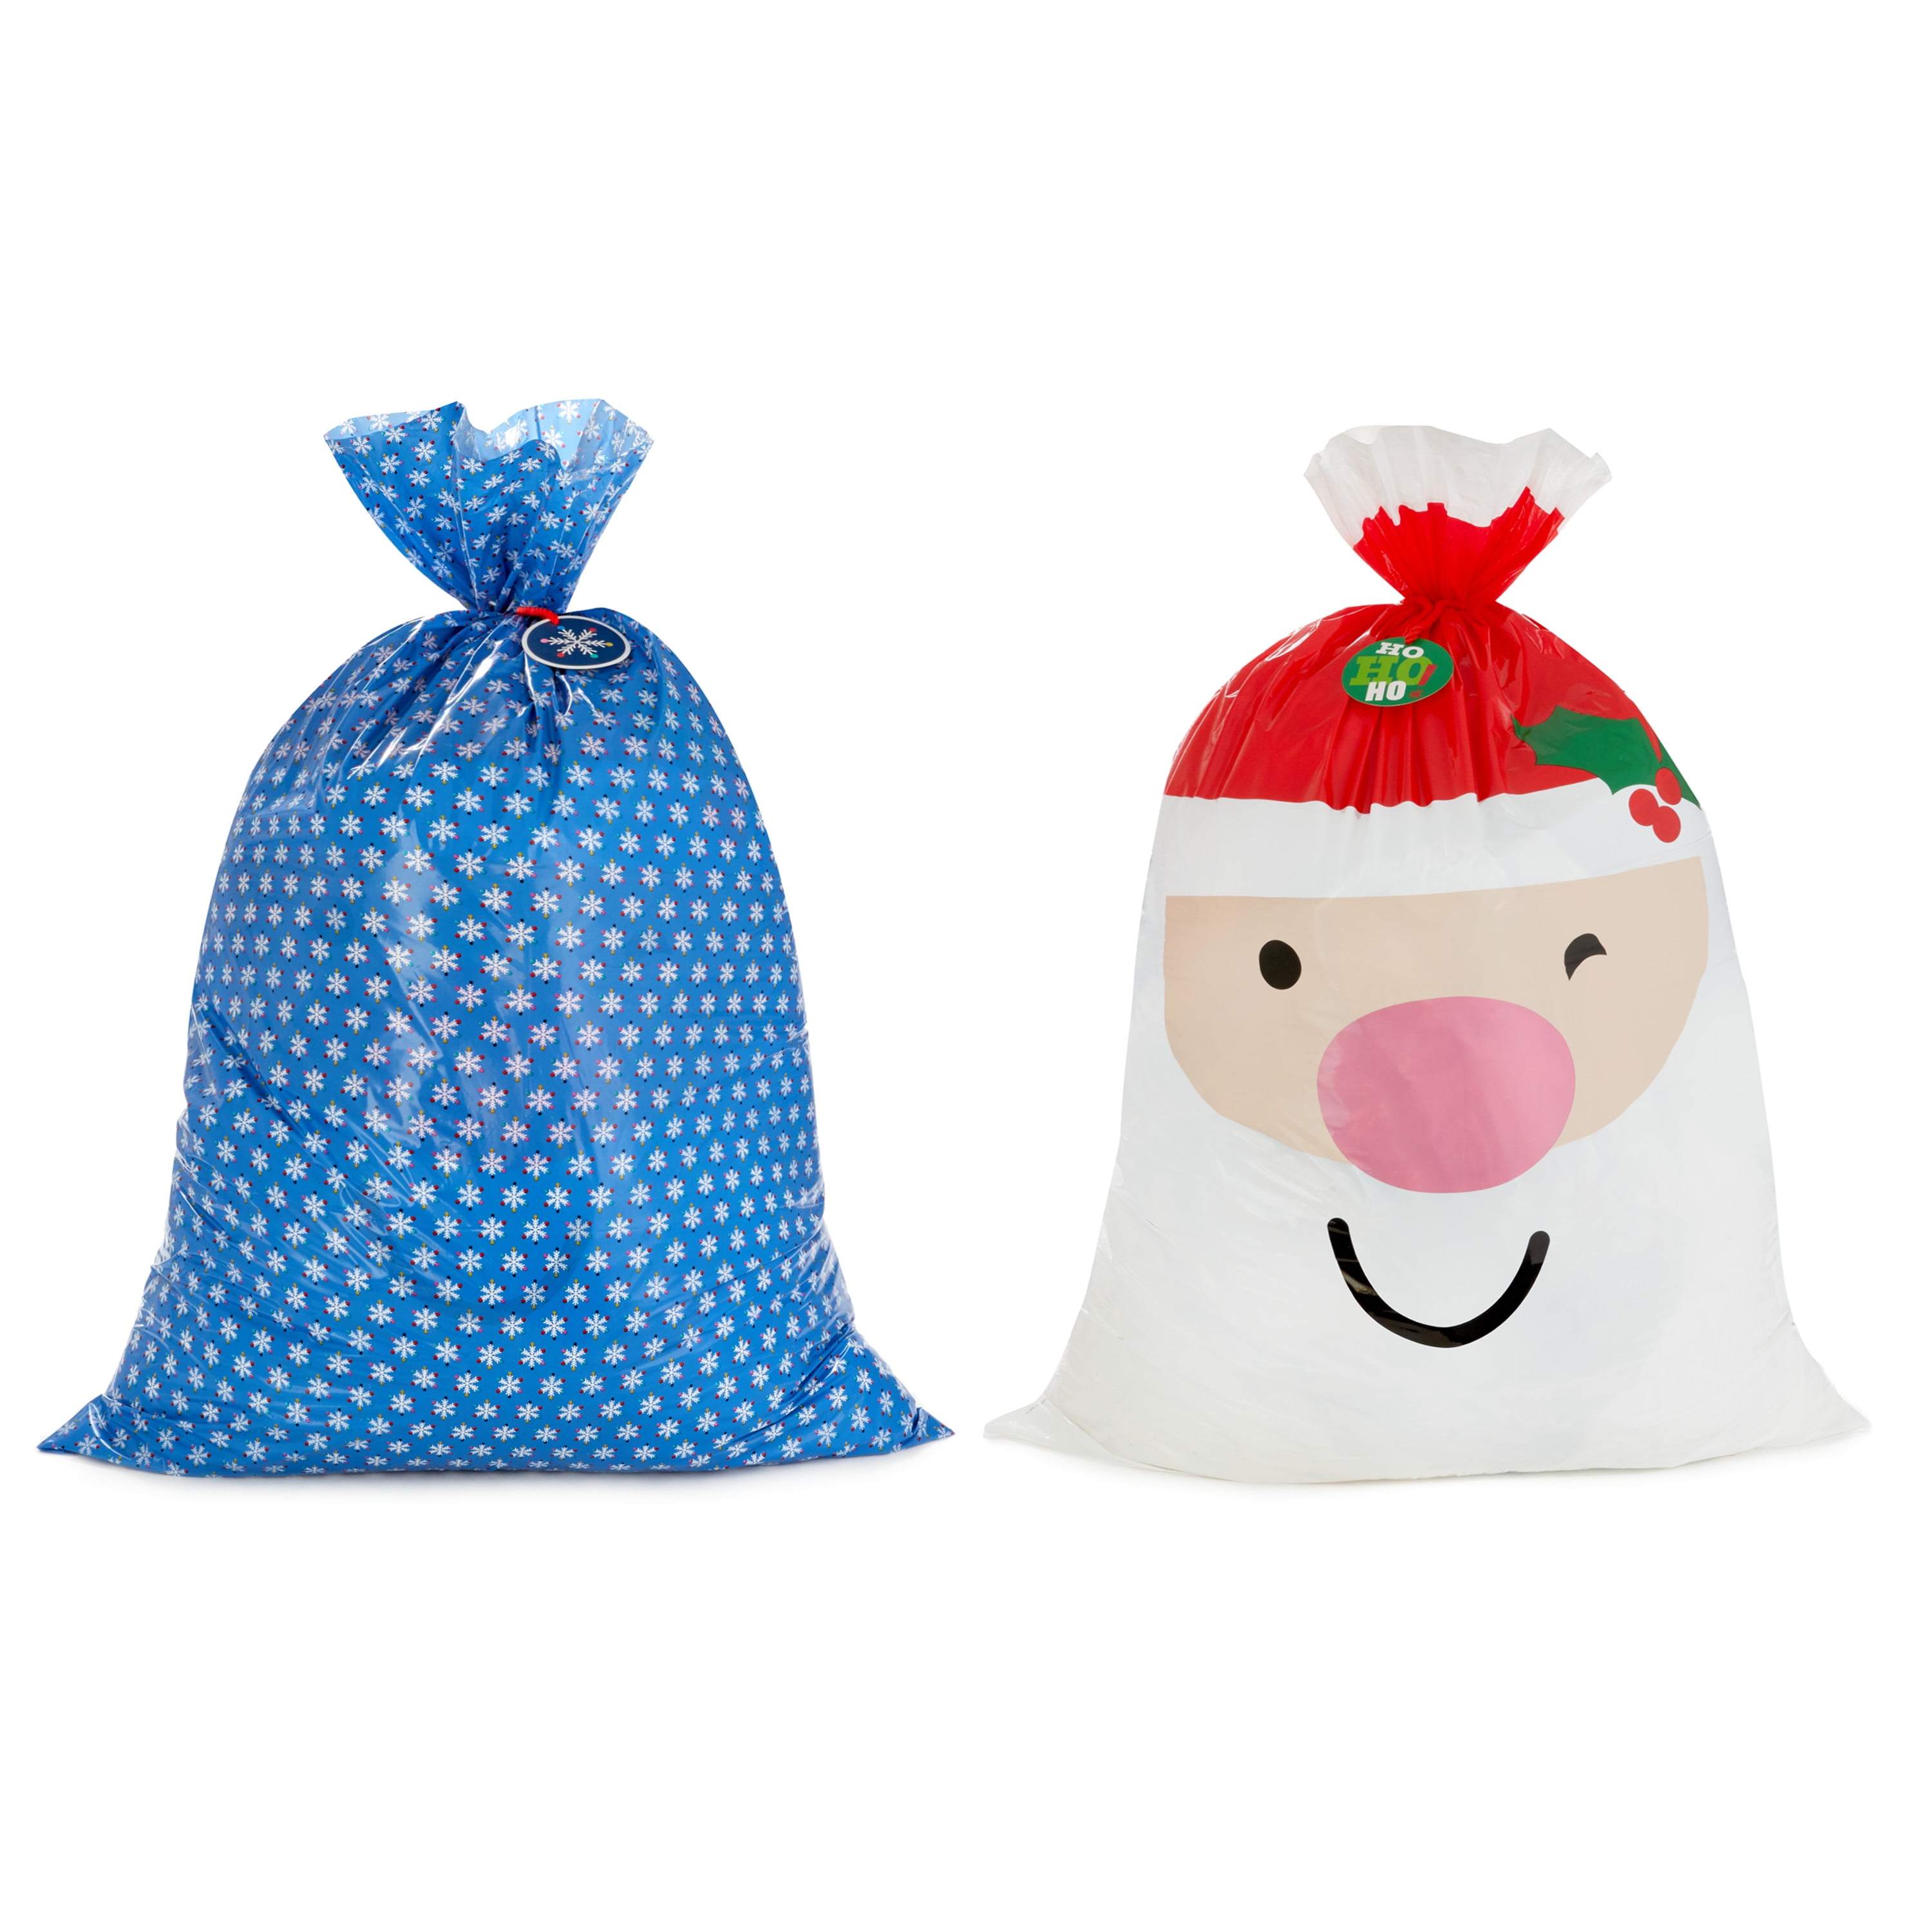 Hallmark Jumbo Plastic Christmas Gift Bags with Gift Tags and Tie